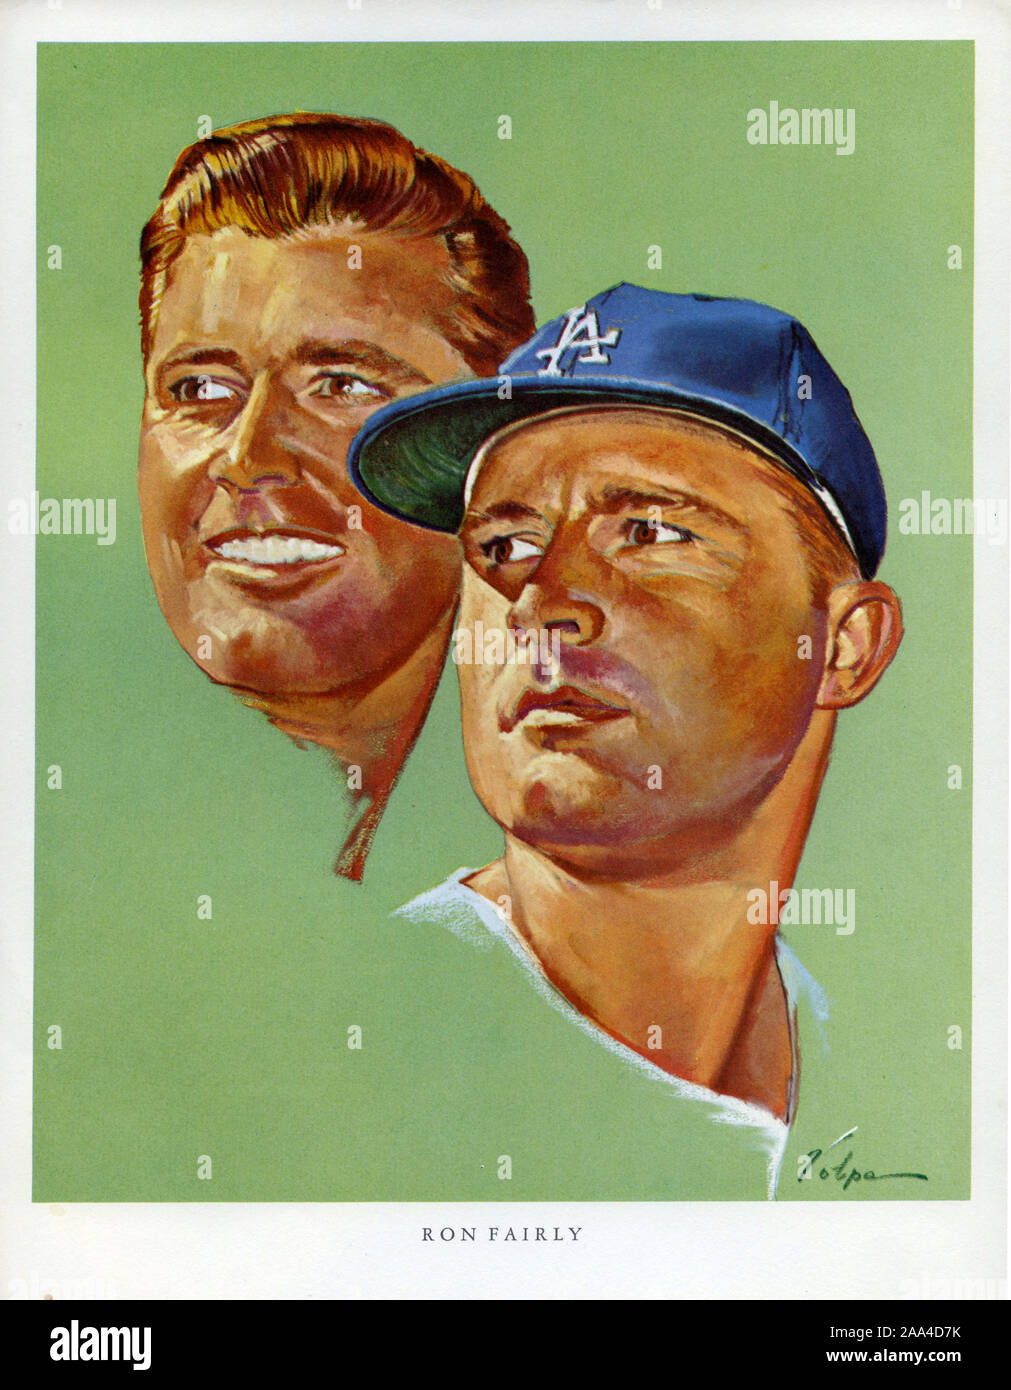 Ritratto di Souvenir di Los Angeles Dodger player Ron abbastanza per artista Nicola Volpe è stato dato ai clienti in 76 stazioni gas a Los Angeles nel 1964 come una promozione. Foto Stock